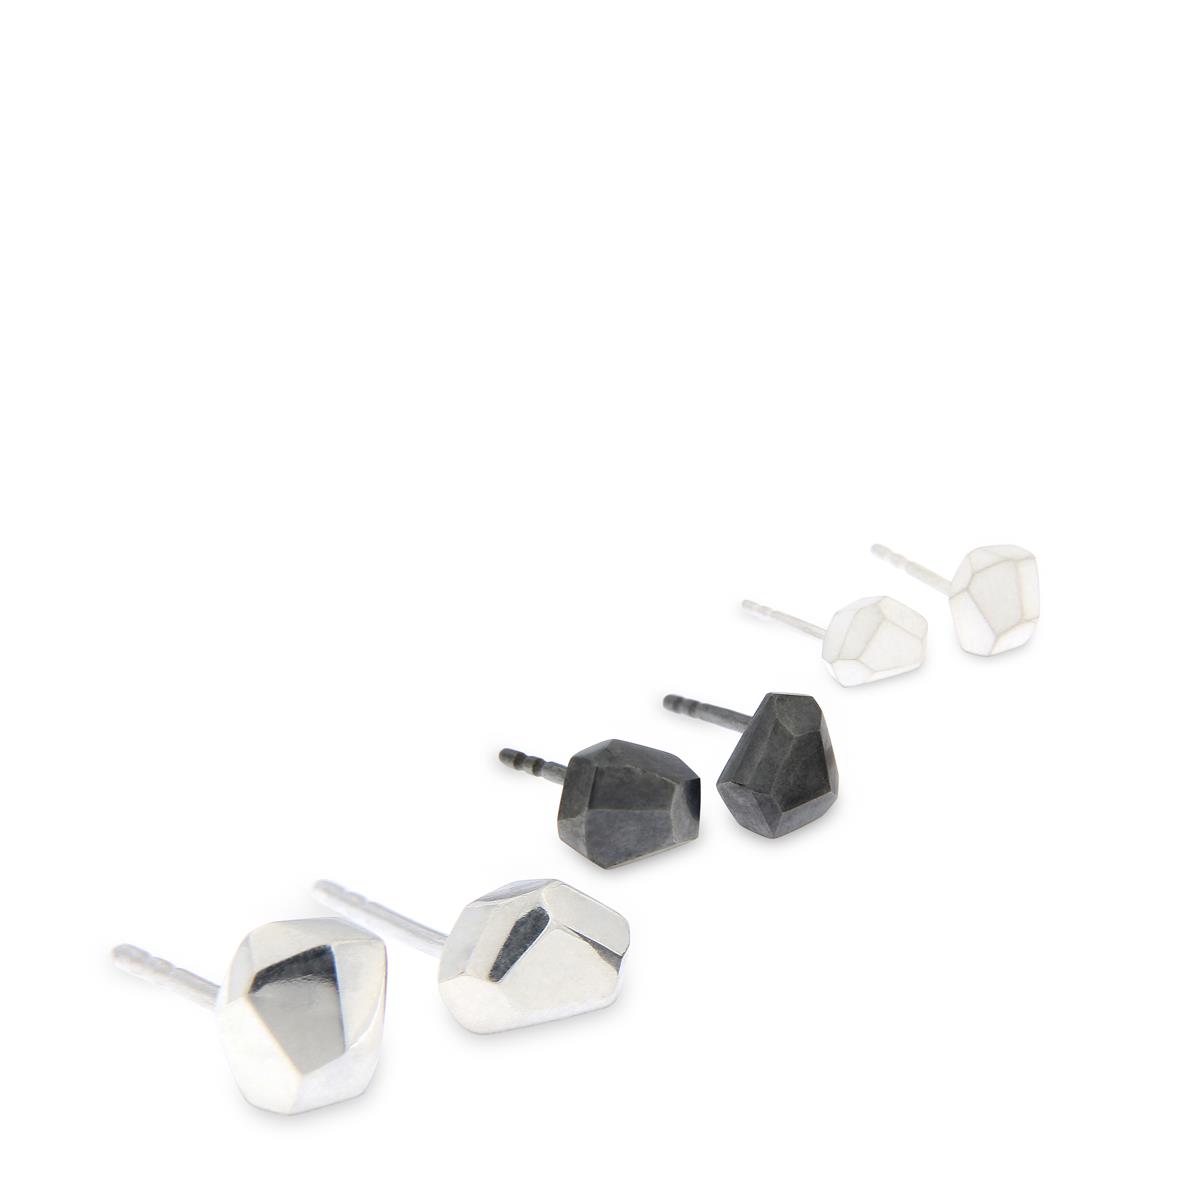 Katie g. Jewellery - Cutting Edge Earstuds - sterling silber poliert - oxidiert - matt weiß - 90€ bis 130€ for das Paar je nach Größe